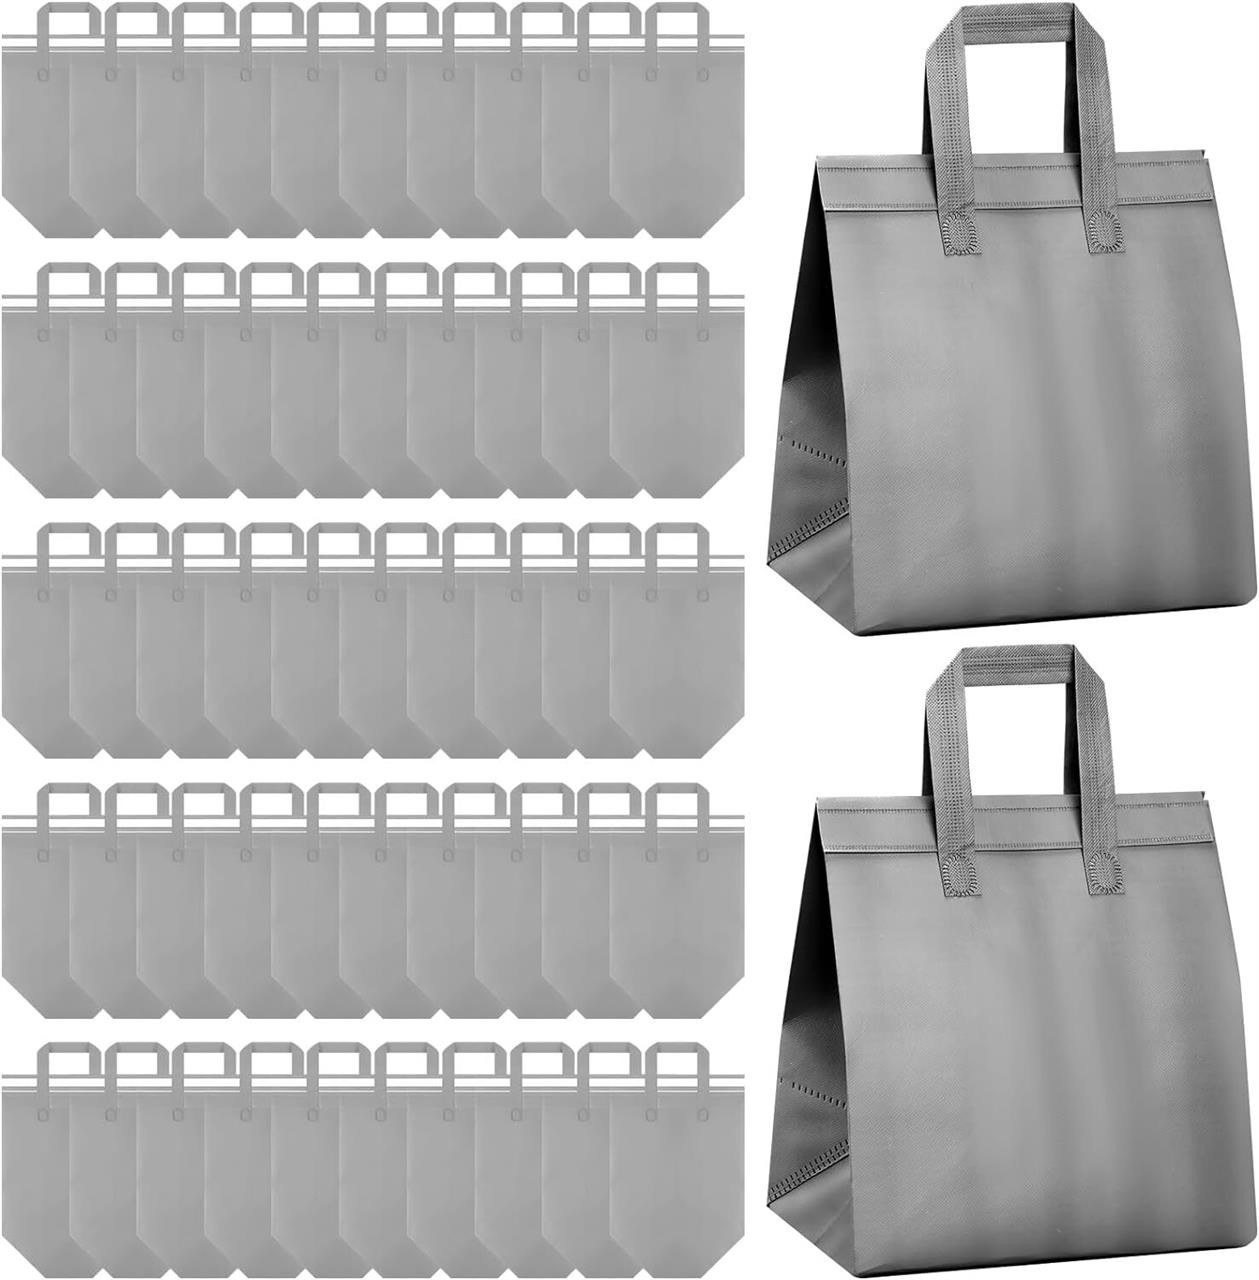 Hushee 200 Pcs Insulated Bags 10.24x11.02x6.69